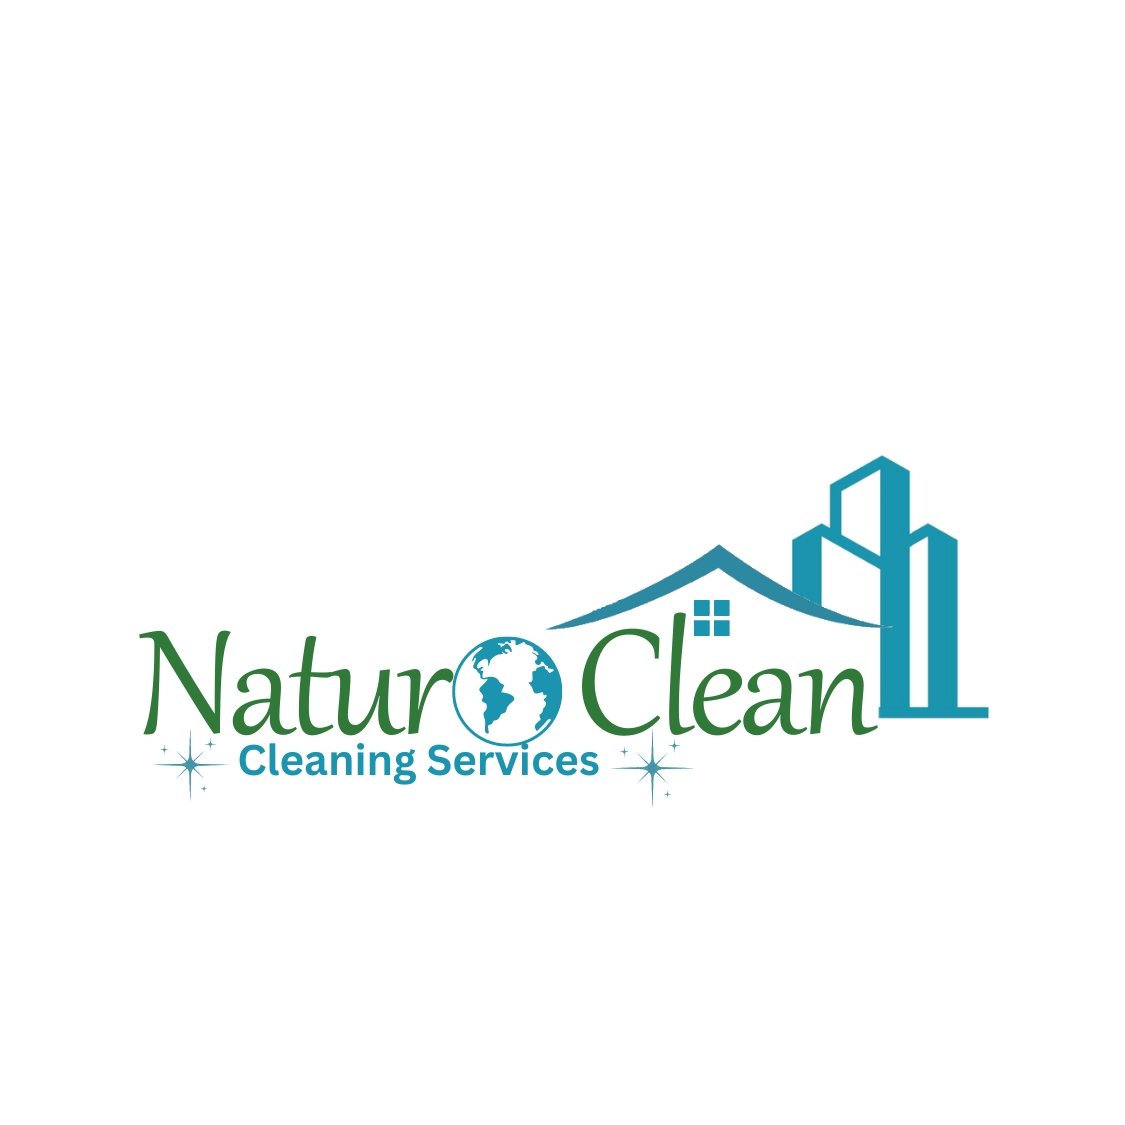 NaturoClean Logo